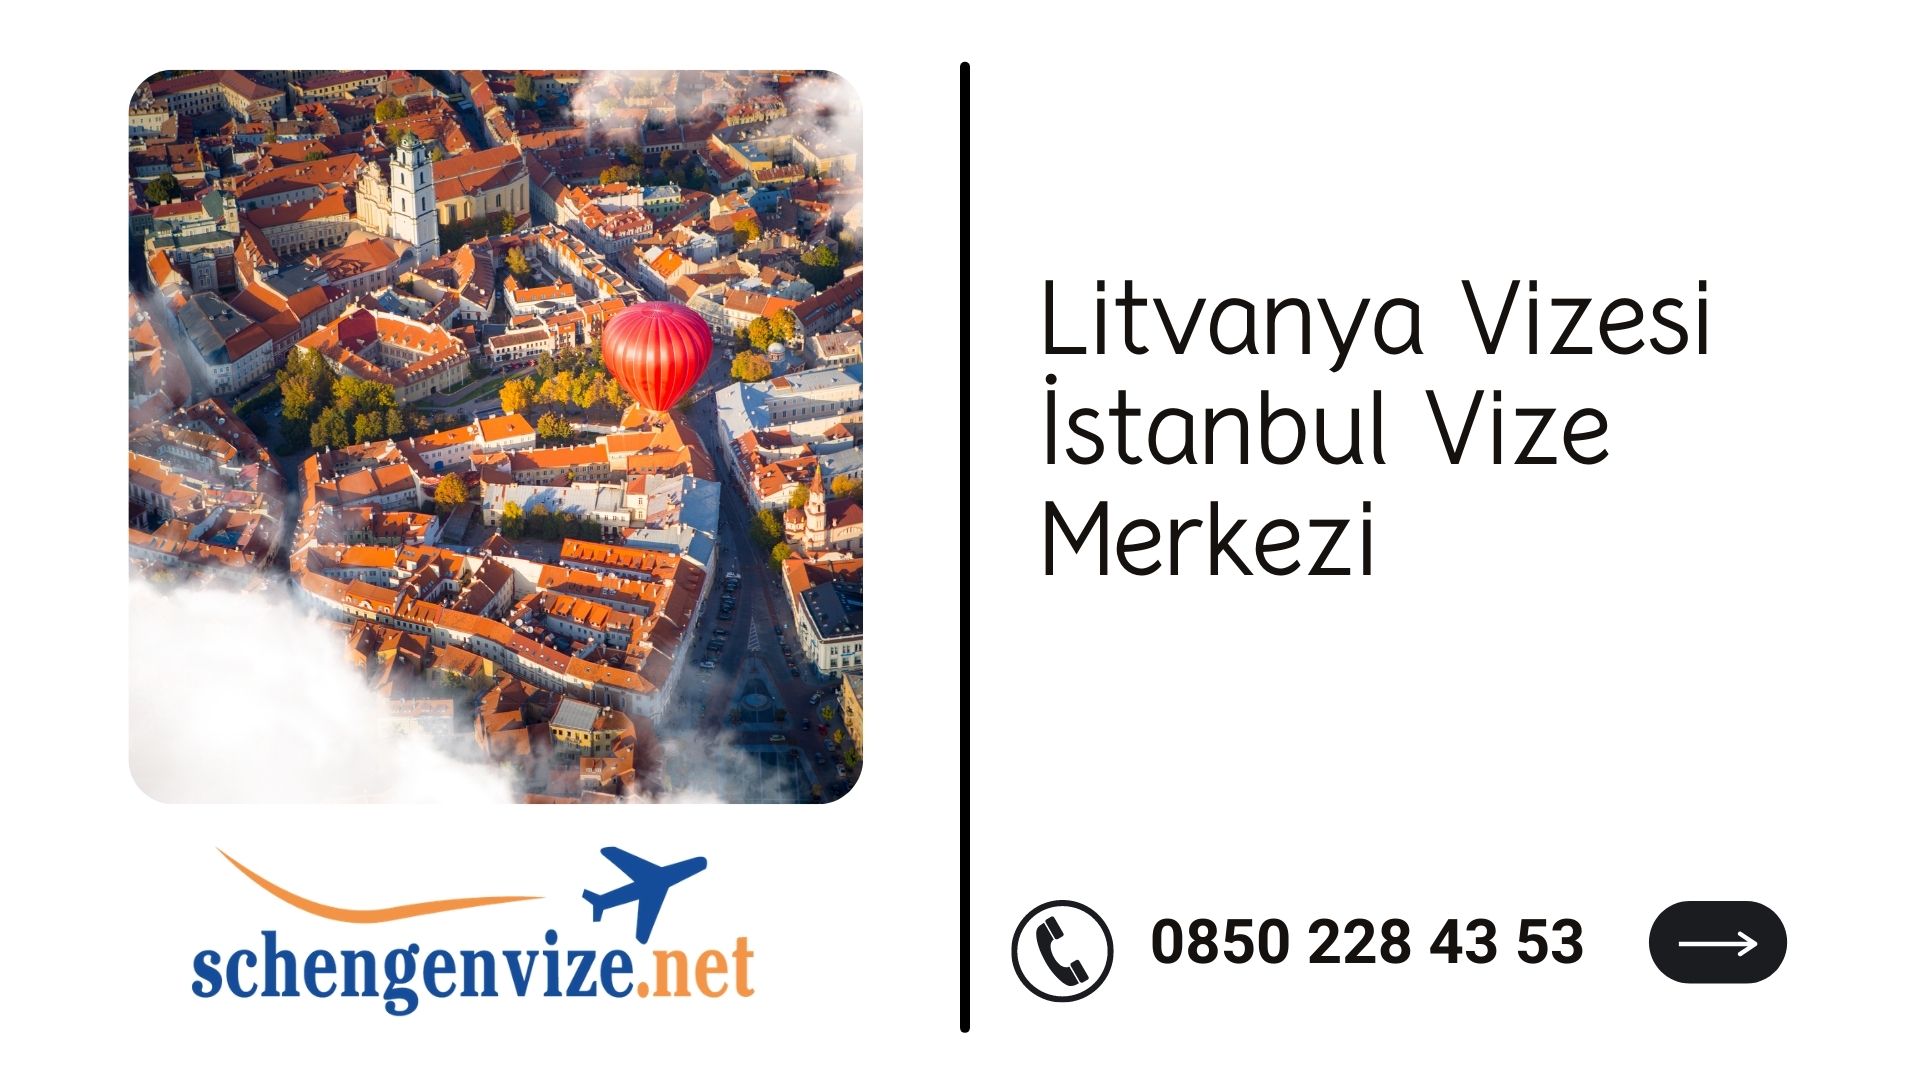 Litvanya Vizesi İstanbul Vize Merkezi